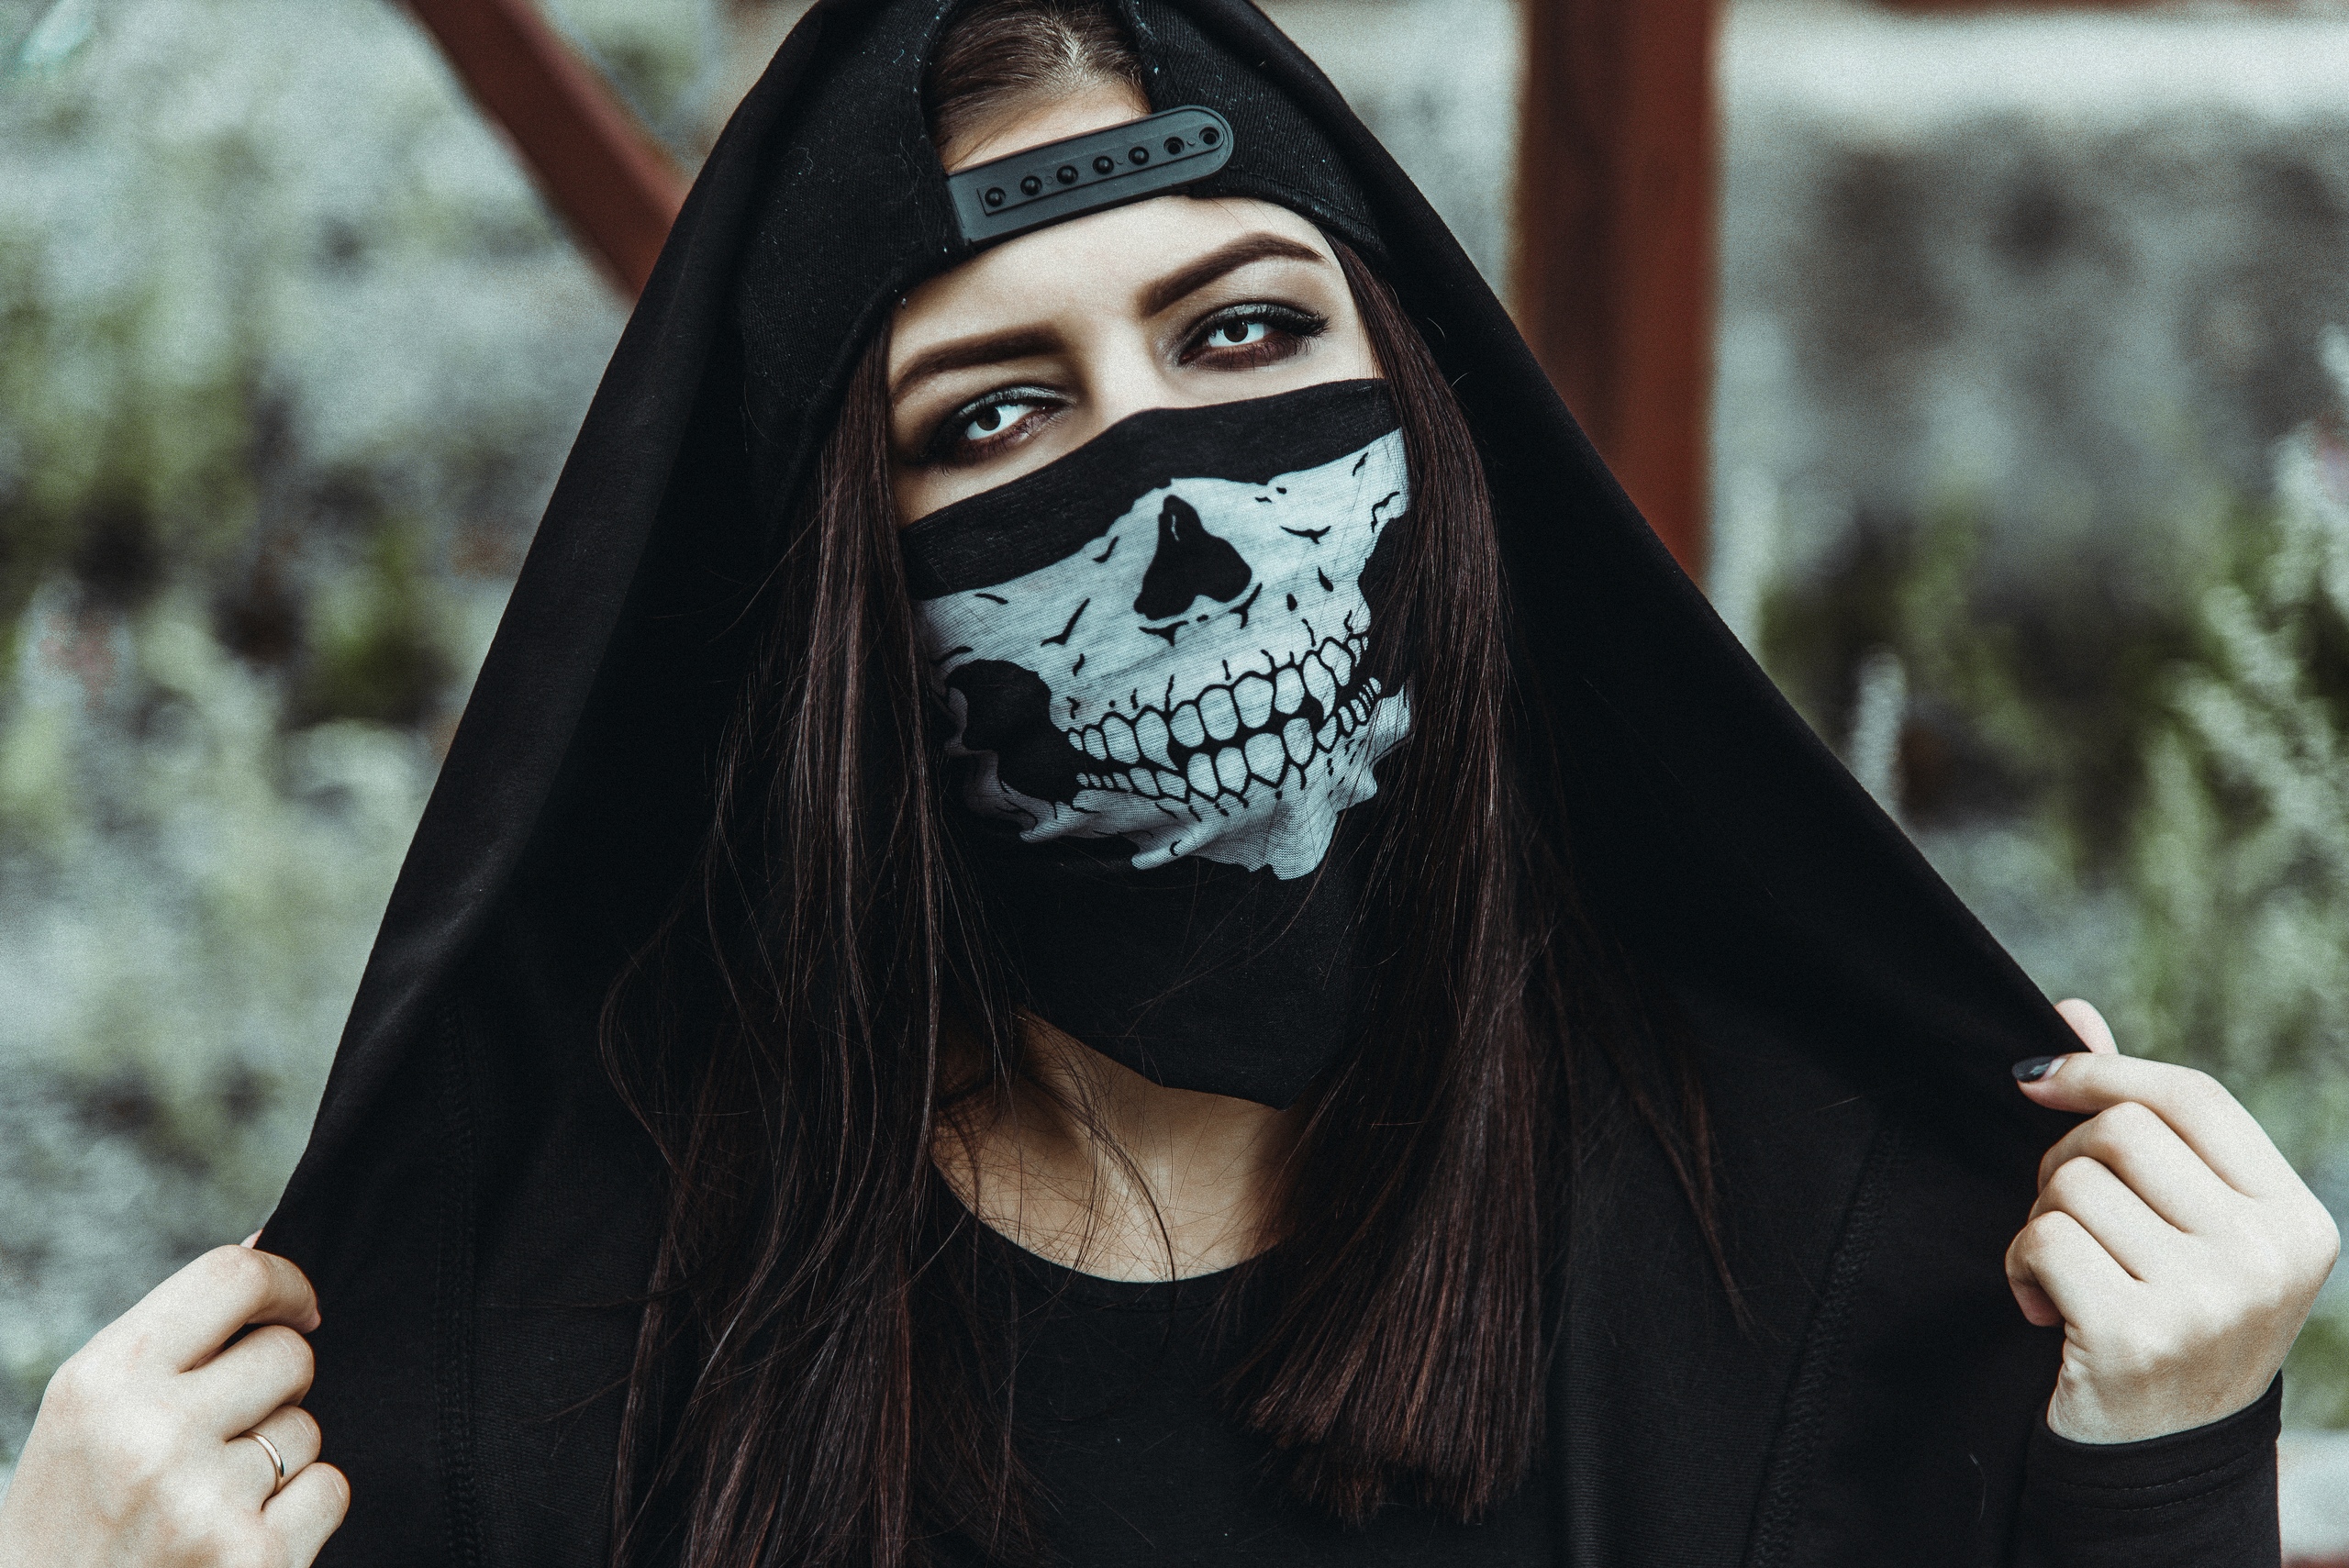 Women Baseball Caps Hoods Black Clothing Outdoors Contact Lenses Mask Skeleton Skull Women Outdoors 2560x1709